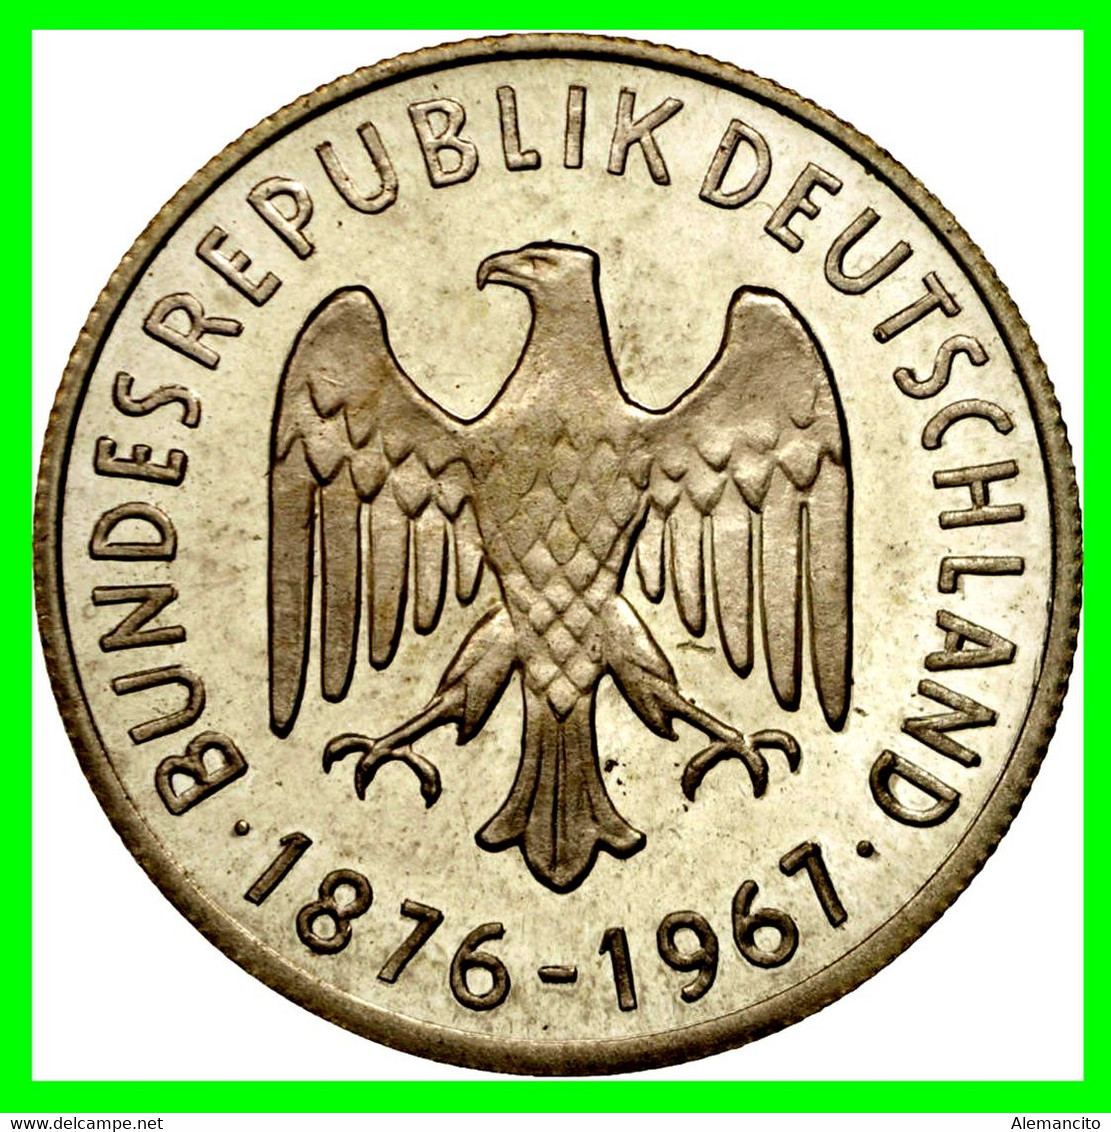 GERMANY ( ALEMANIA ) MONEDA MEDALLA - KONRAD ADENAUER 1876-1967 -- ALEMANIA 15.00 GR DE PLATA Y DE 35 MM DE DIAMETRO - Sammlungen